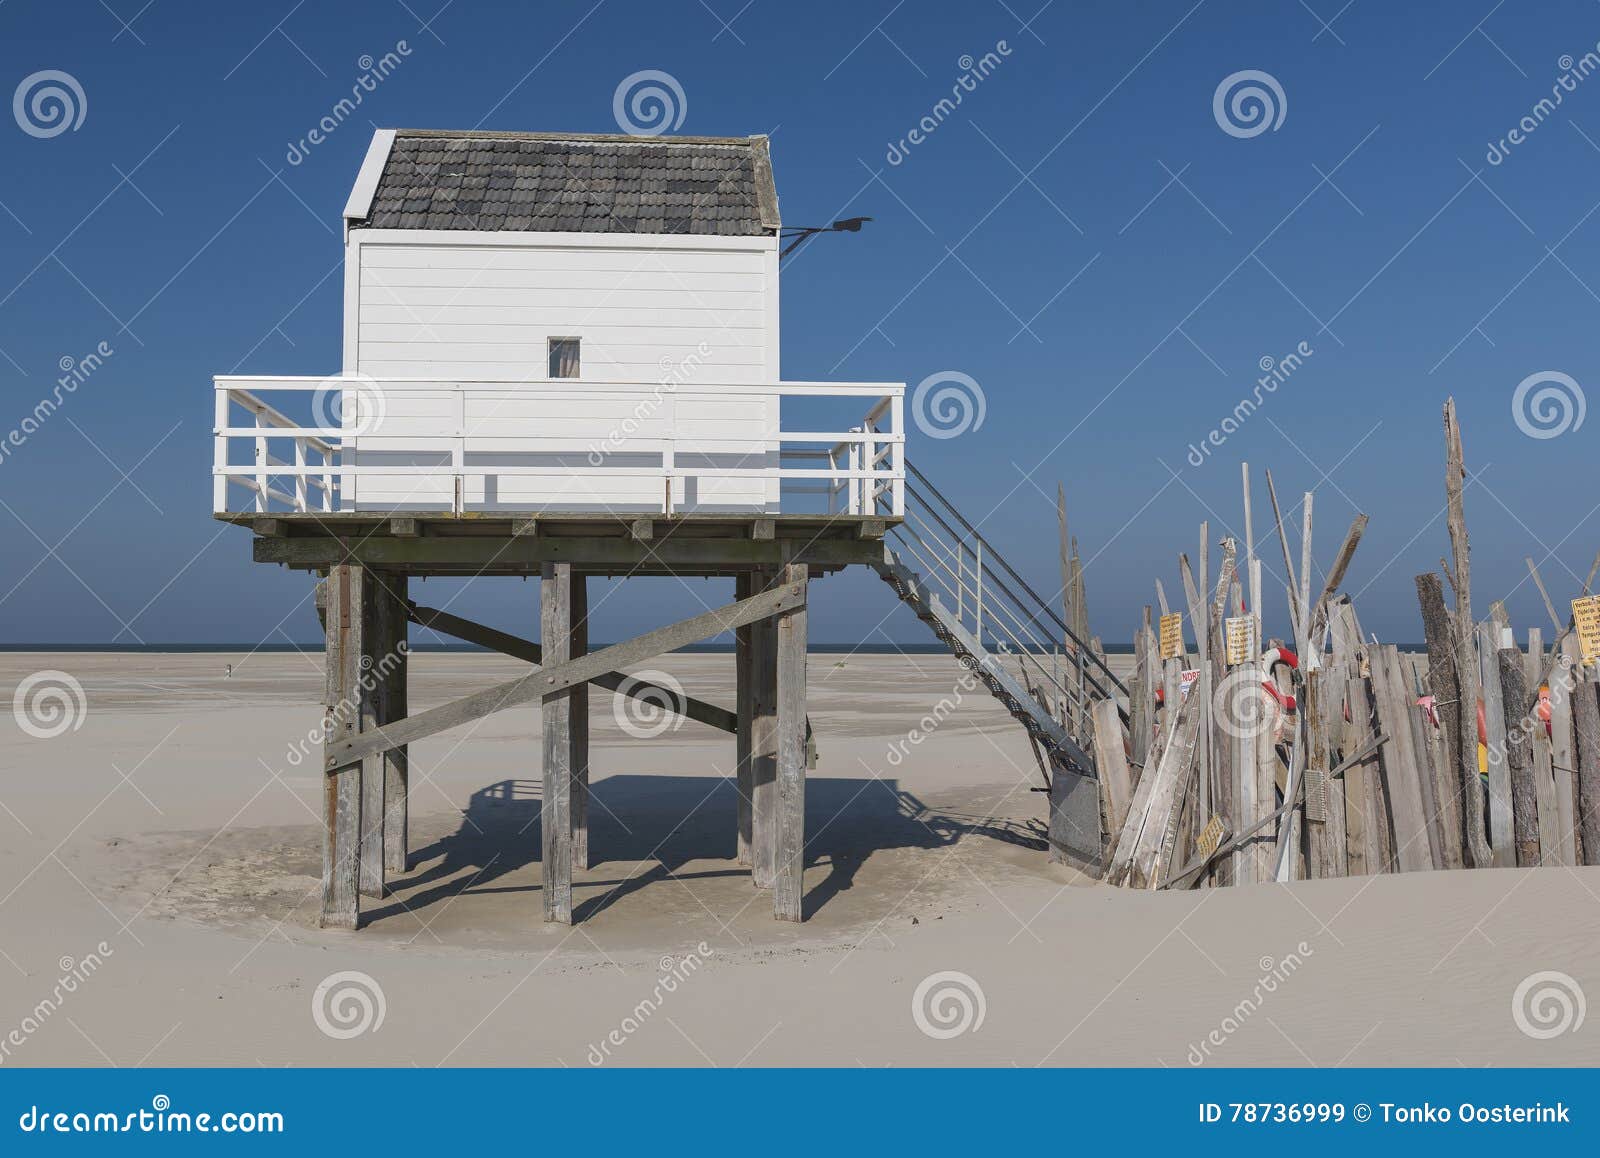 sea cottage on the island of vlieland